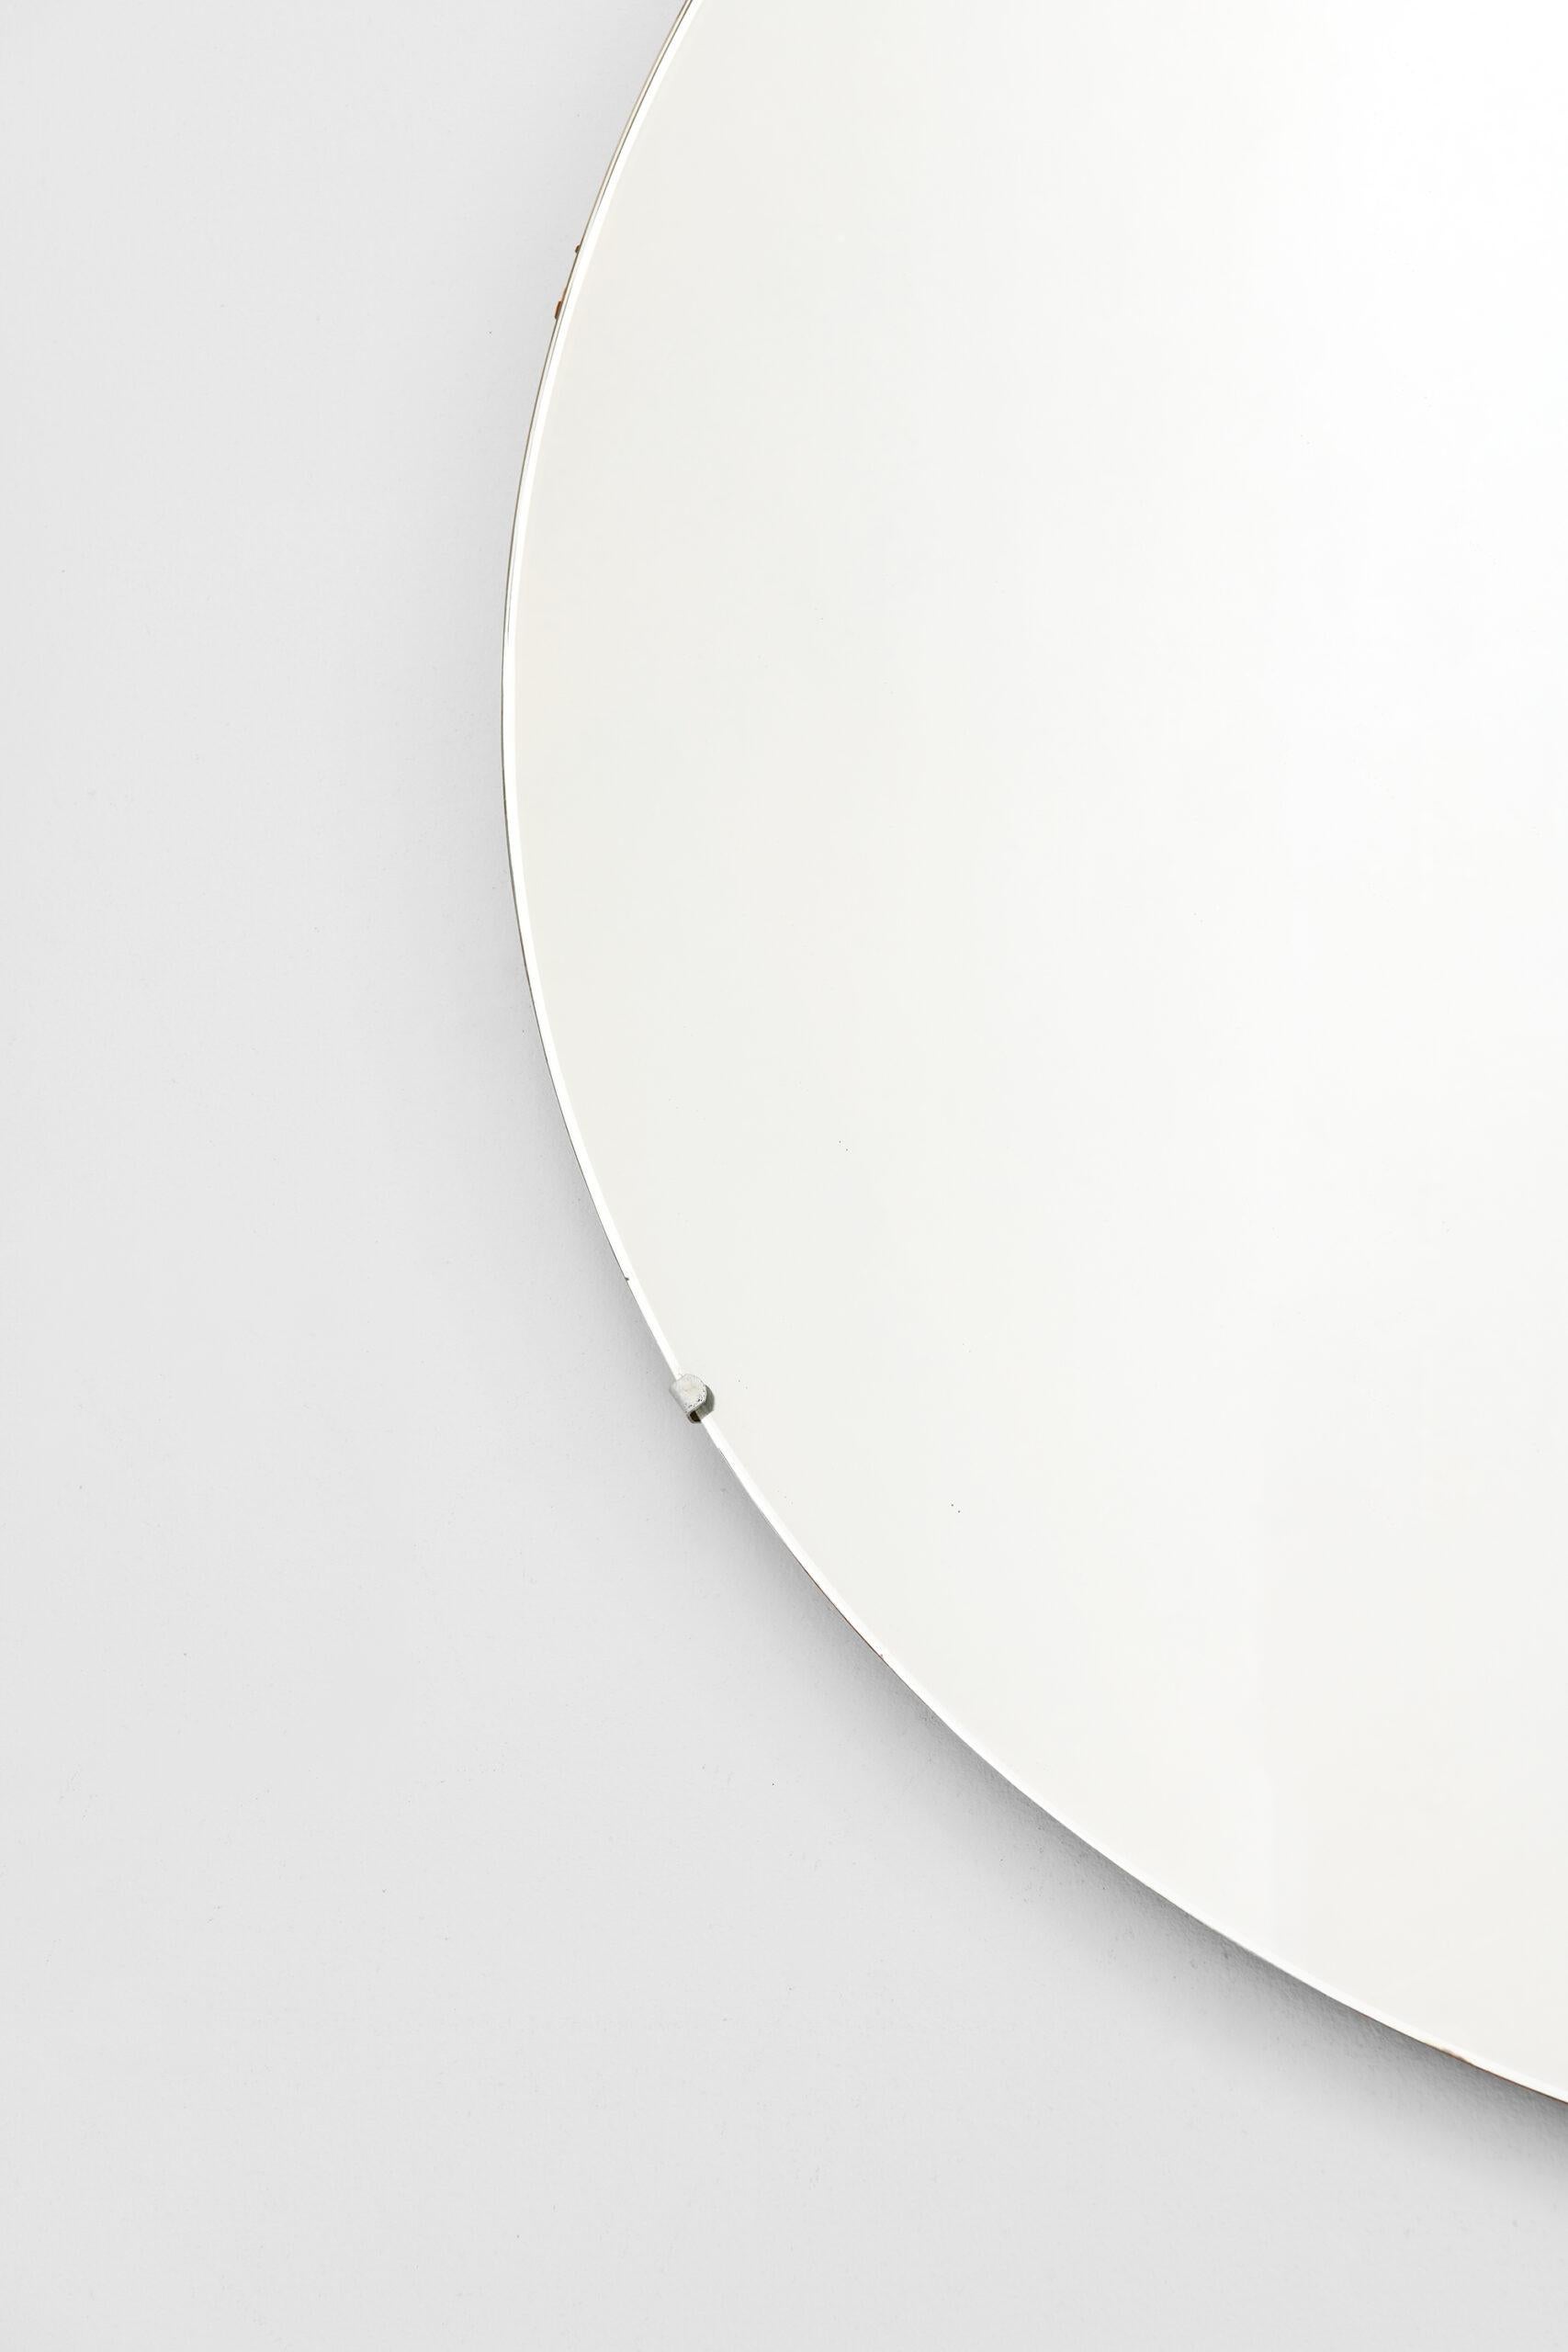 Großer runder Spiegel von unbekanntem Designer. Produziert in Schweden.